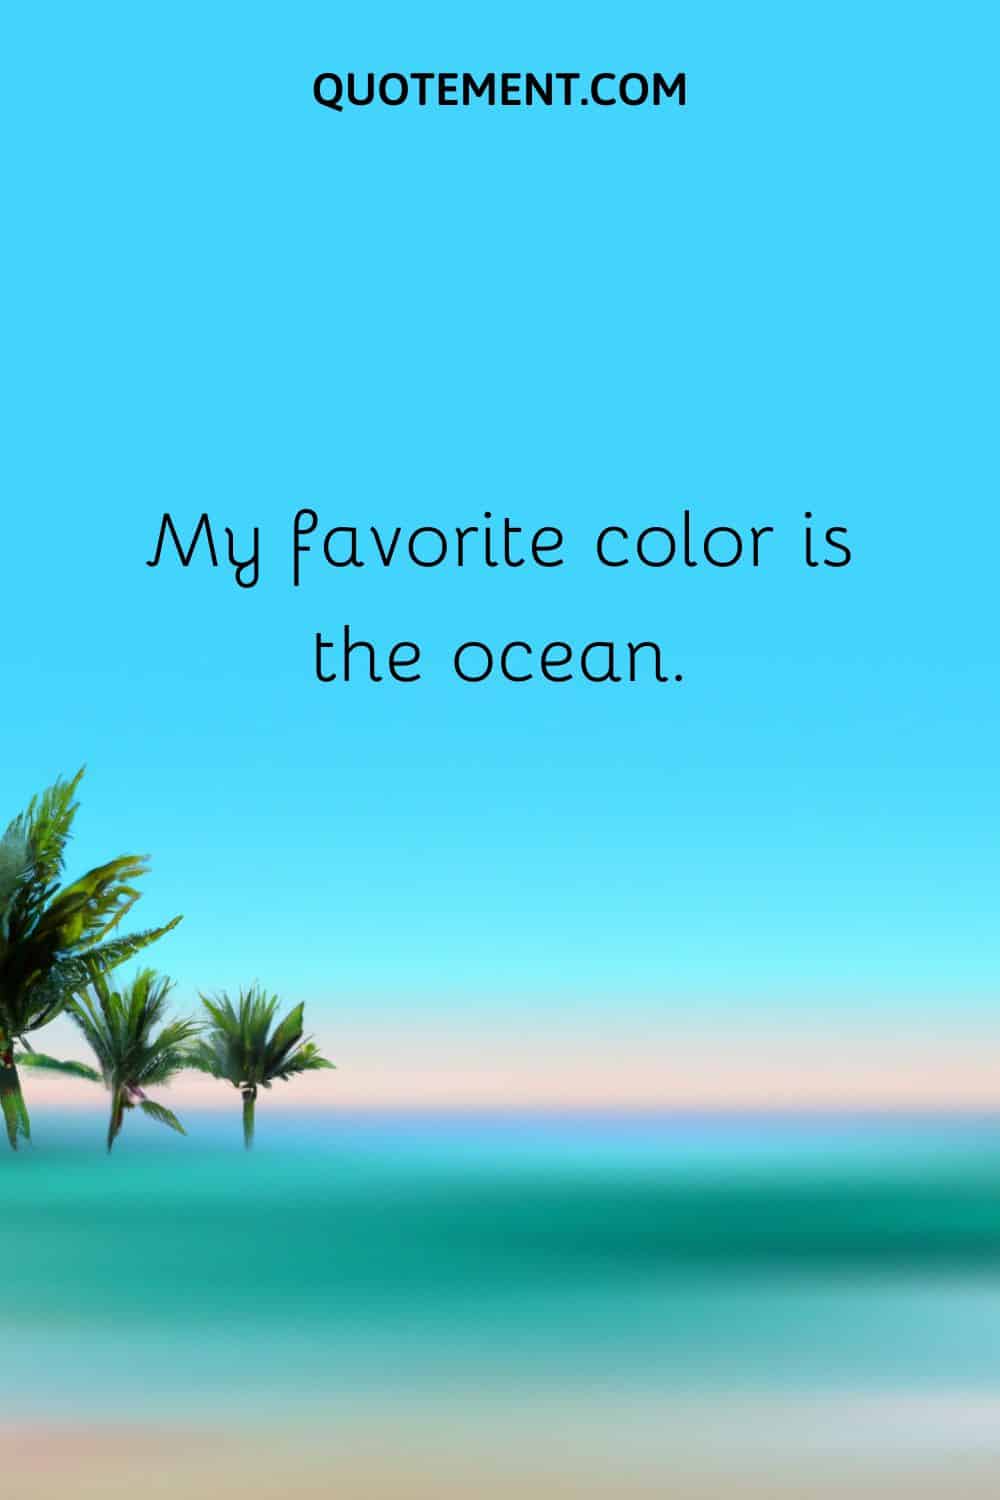 My favorite color is the ocean